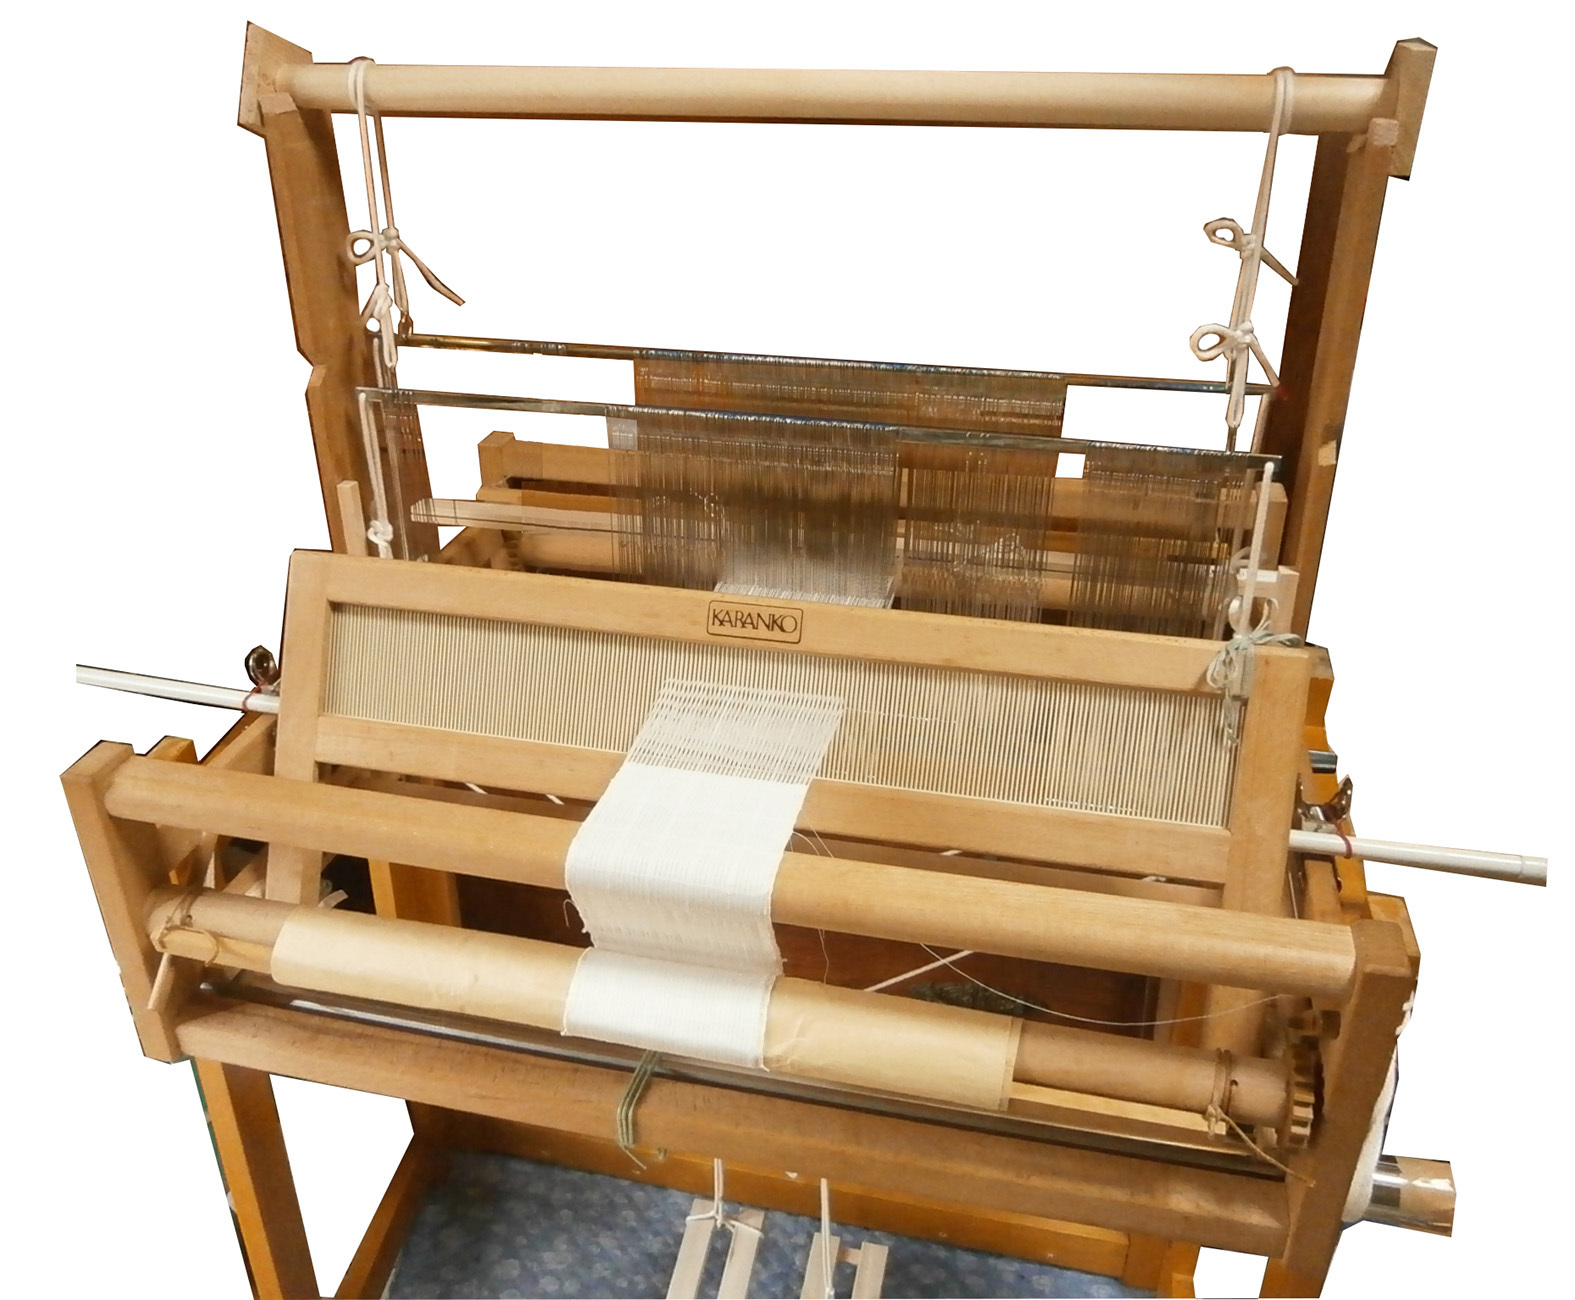 卓上織り機［LBタイプ］カランコ ホビーラホビーレ 手織り機 - その他